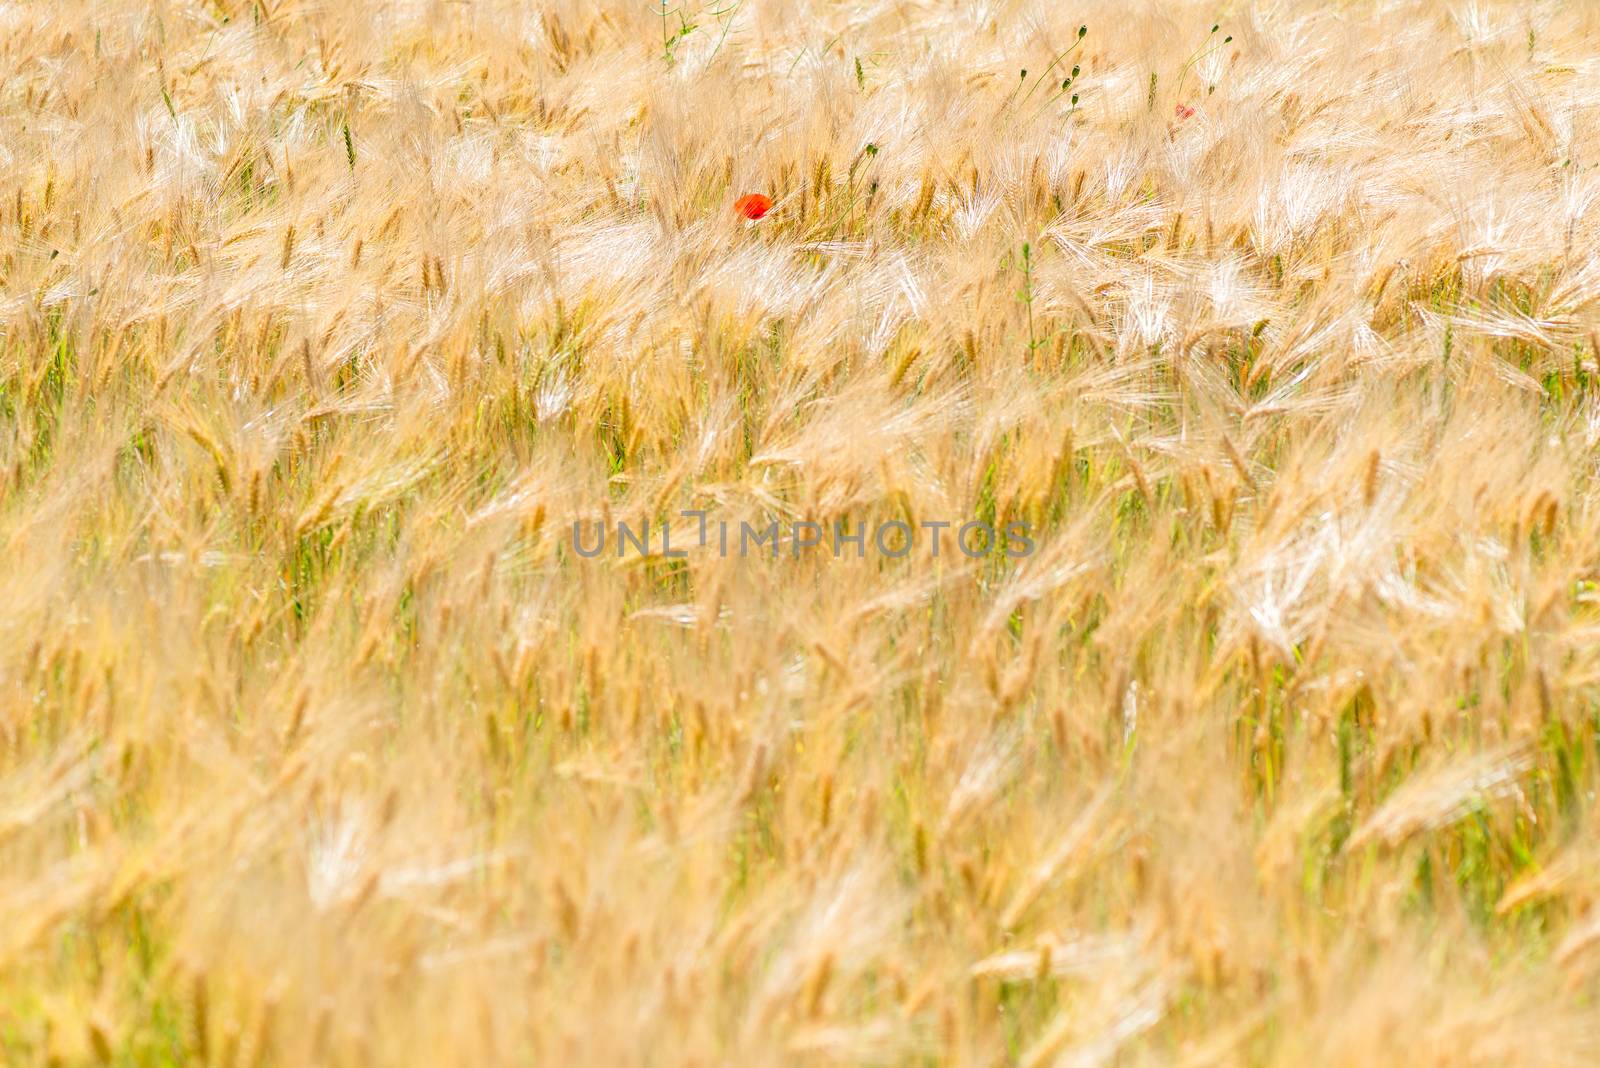 rare poppy flowers in yellow ears of wheat in a field